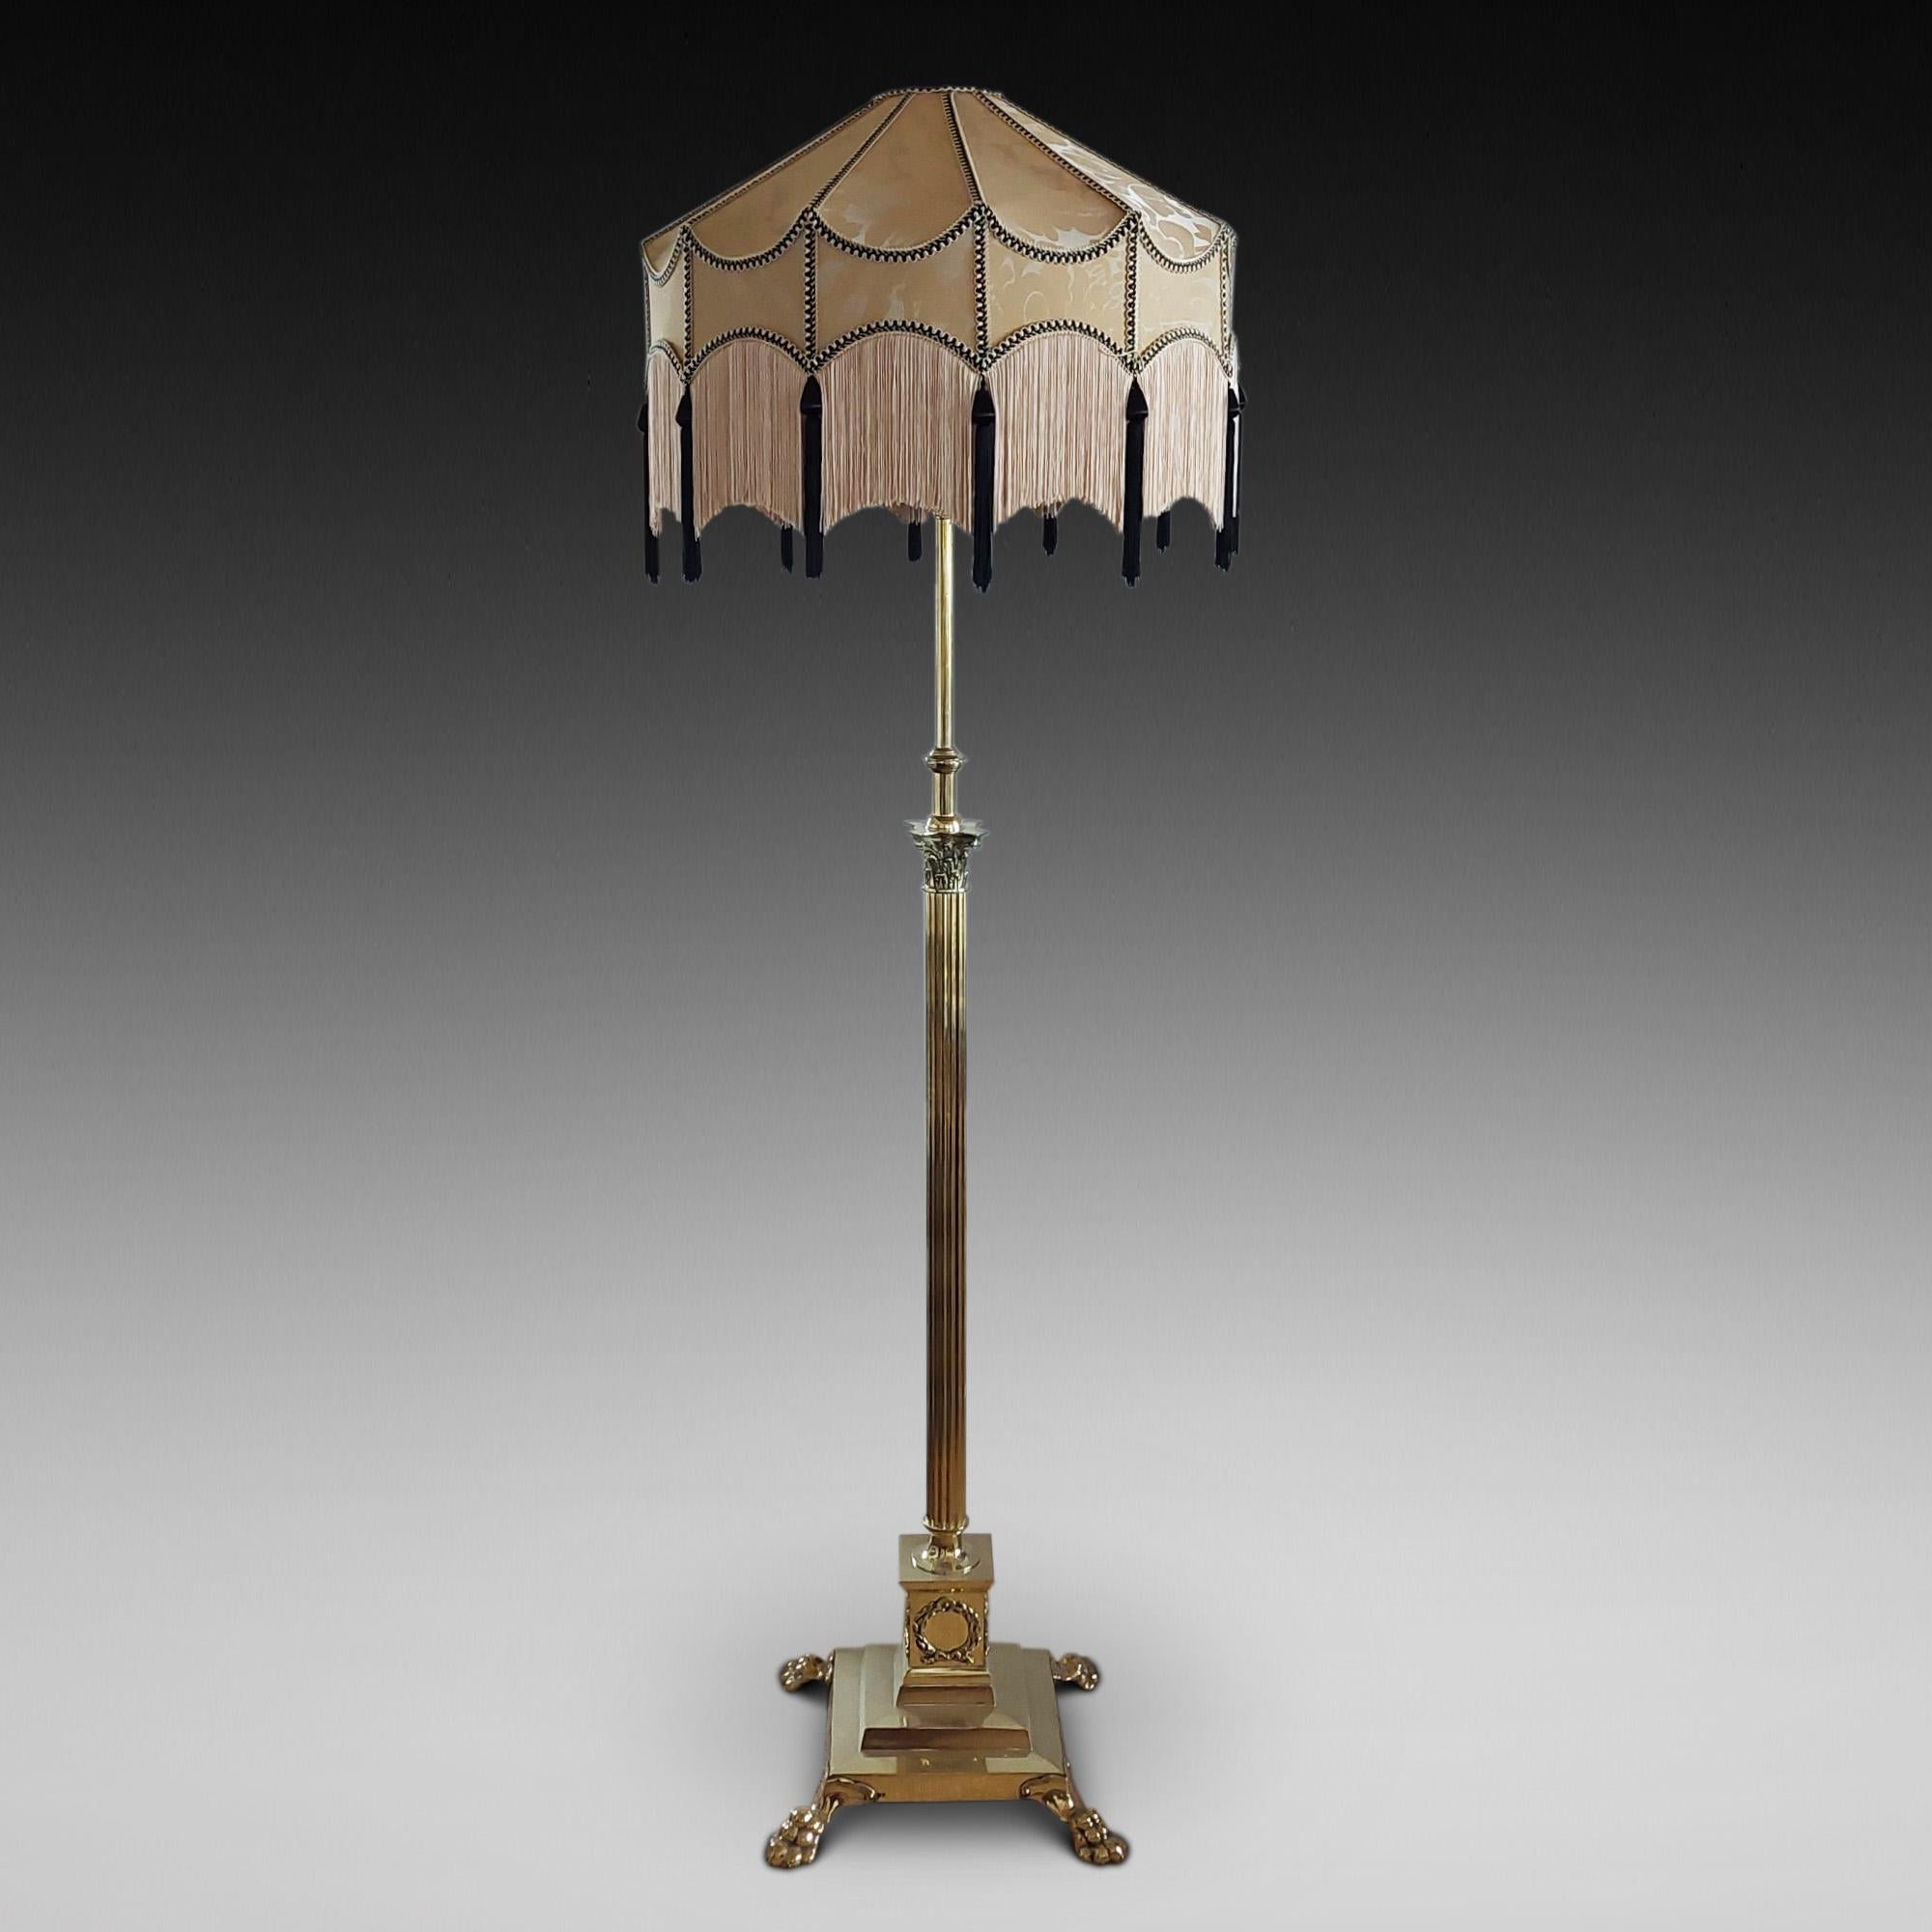 Paire de lampes extensibles en laiton de forme corinthienne néoclassique de la fin du 19e siècle, avec socle à gradins orné d'une couronne de laurier - converties à l'électricité - 22 